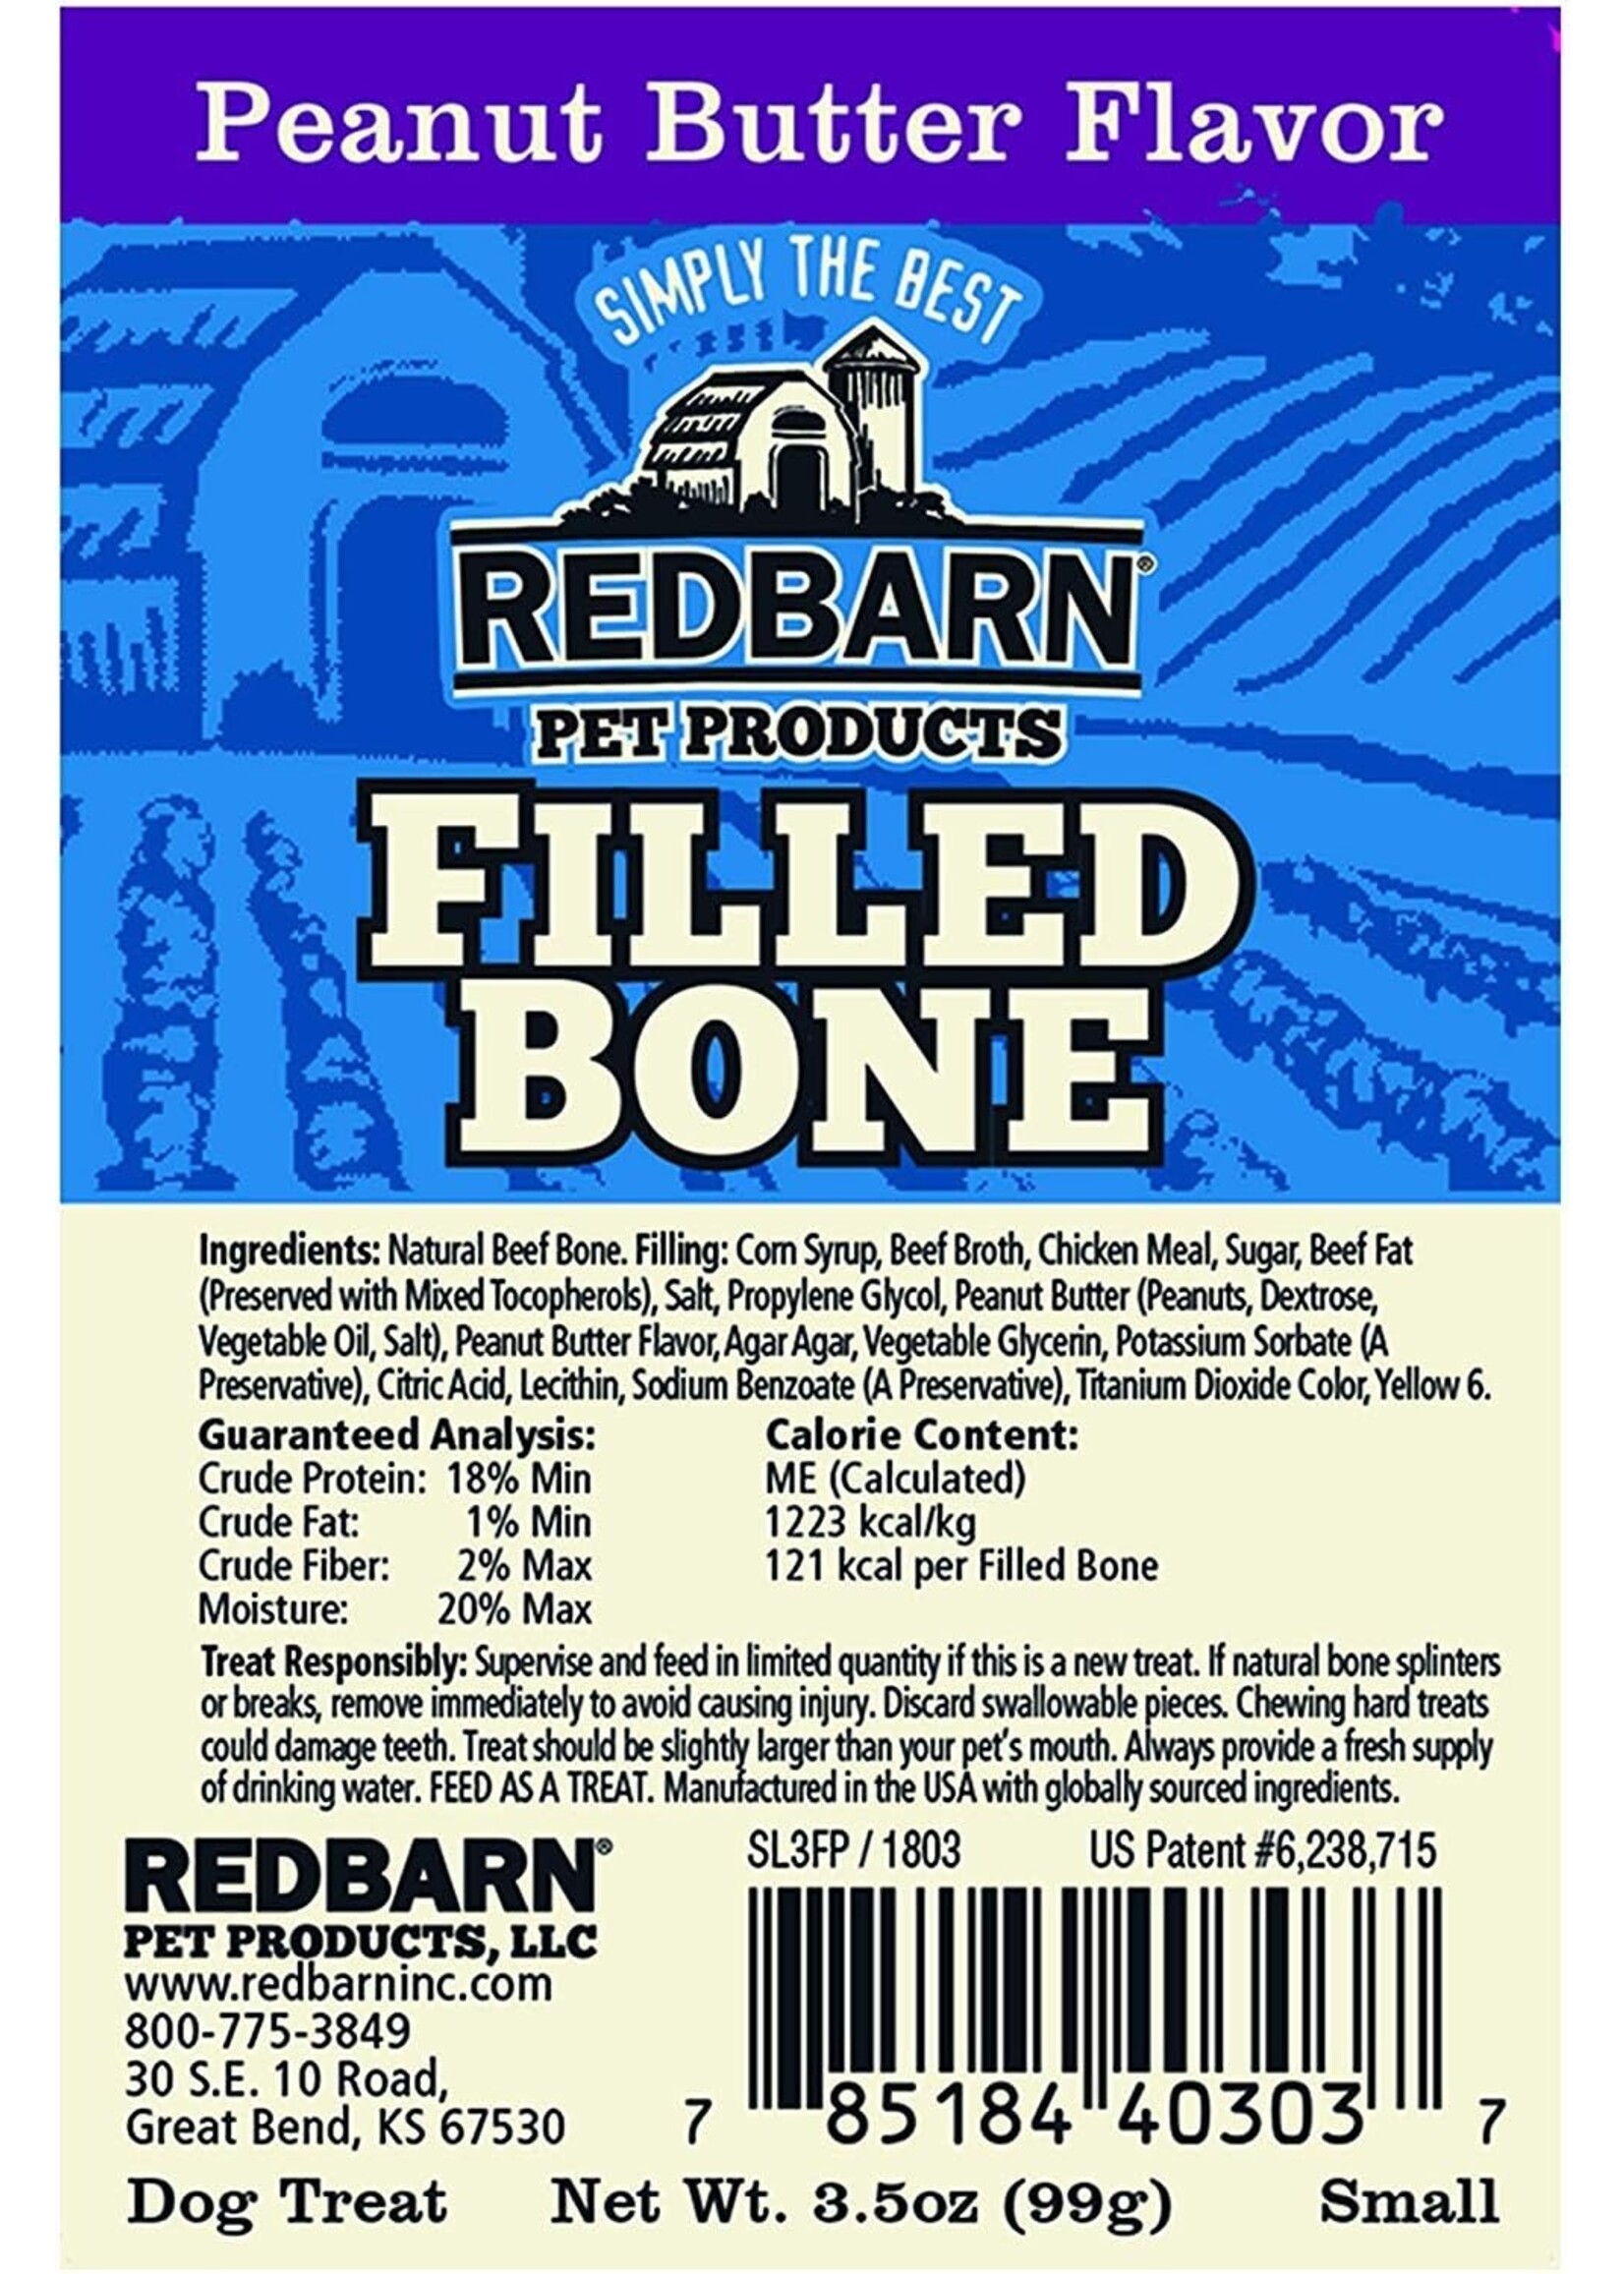 Redbarn Redbarn Filled Bone Peanut Butter Small single